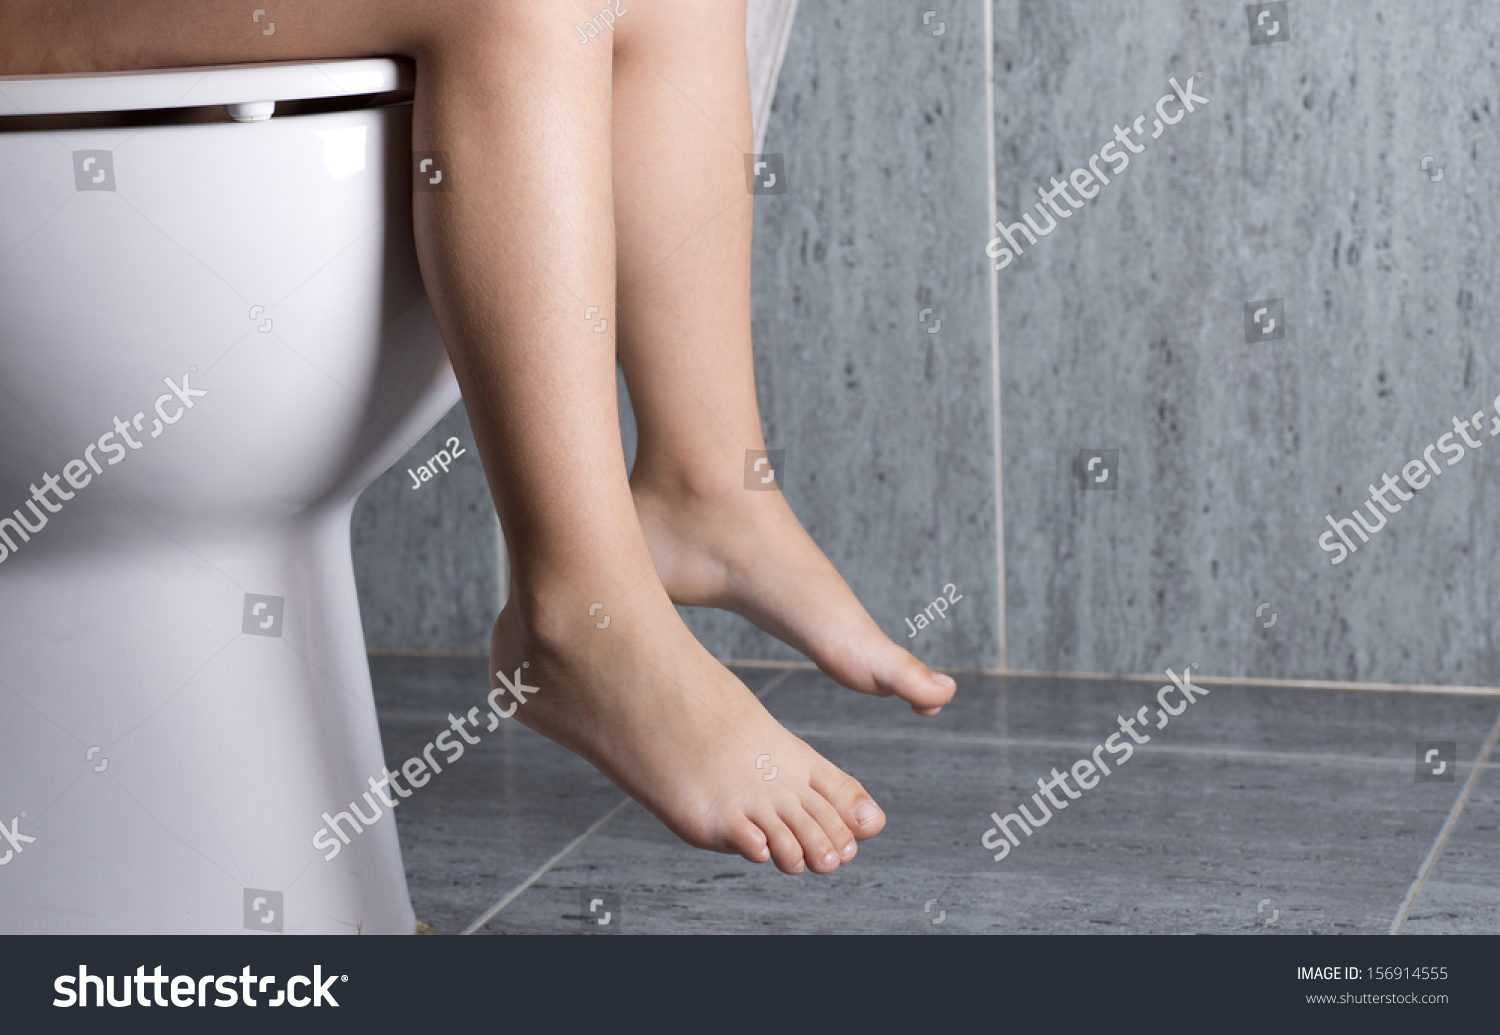 abbie kelly add women peeing in toilet photo